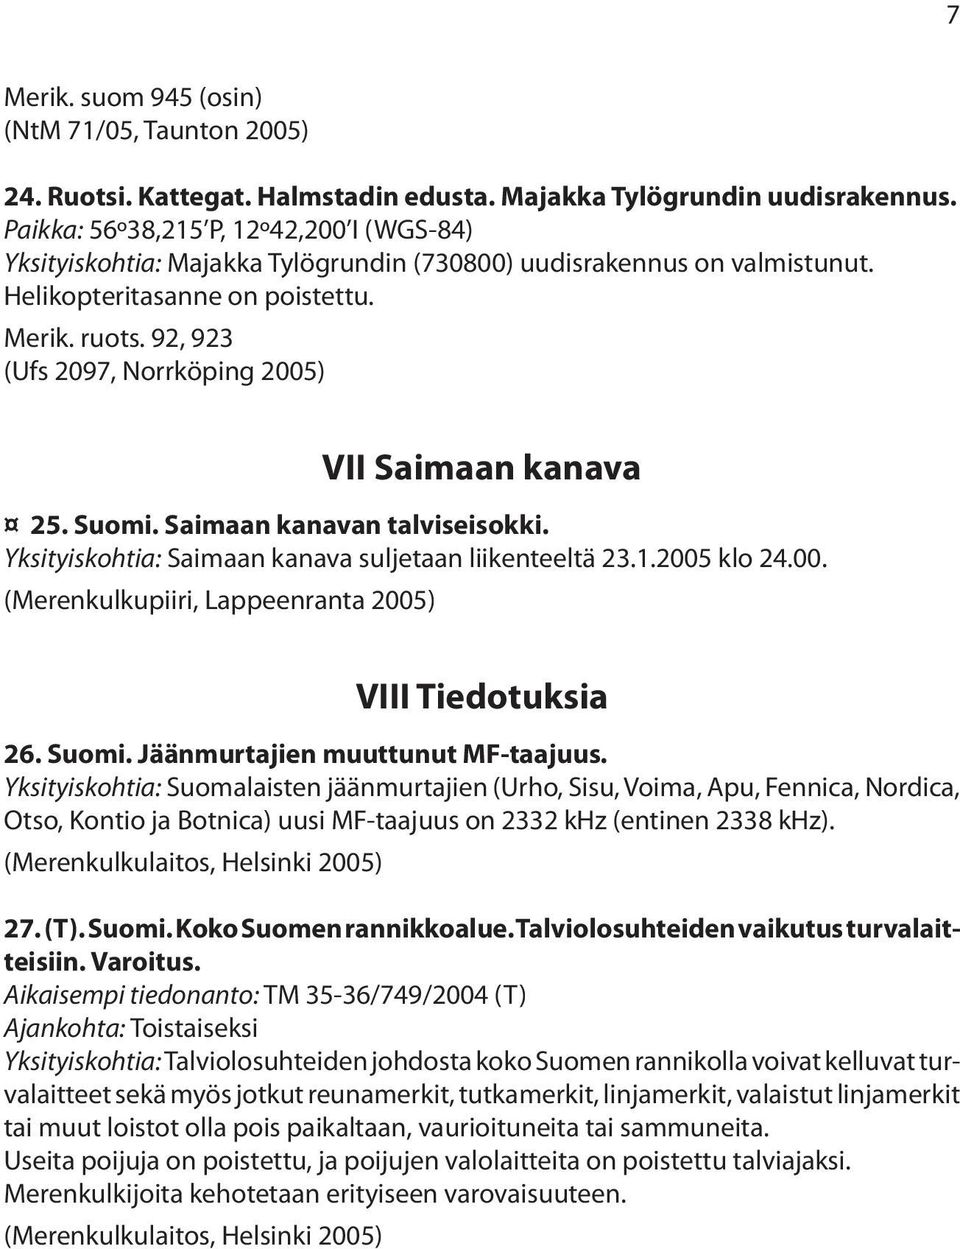 92, 923 (Ufs 2097, Norrköping 2005) VII Saimaan kanava 25. Suomi. Saimaan kanavan talviseisokki. Yksityiskohtia: Saimaan kanava suljetaan liikenteeltä 23.1.2005 klo 24.00. (Merenkulkupiiri, Lappeenranta 2005) VIII Tiedotuksia 26.